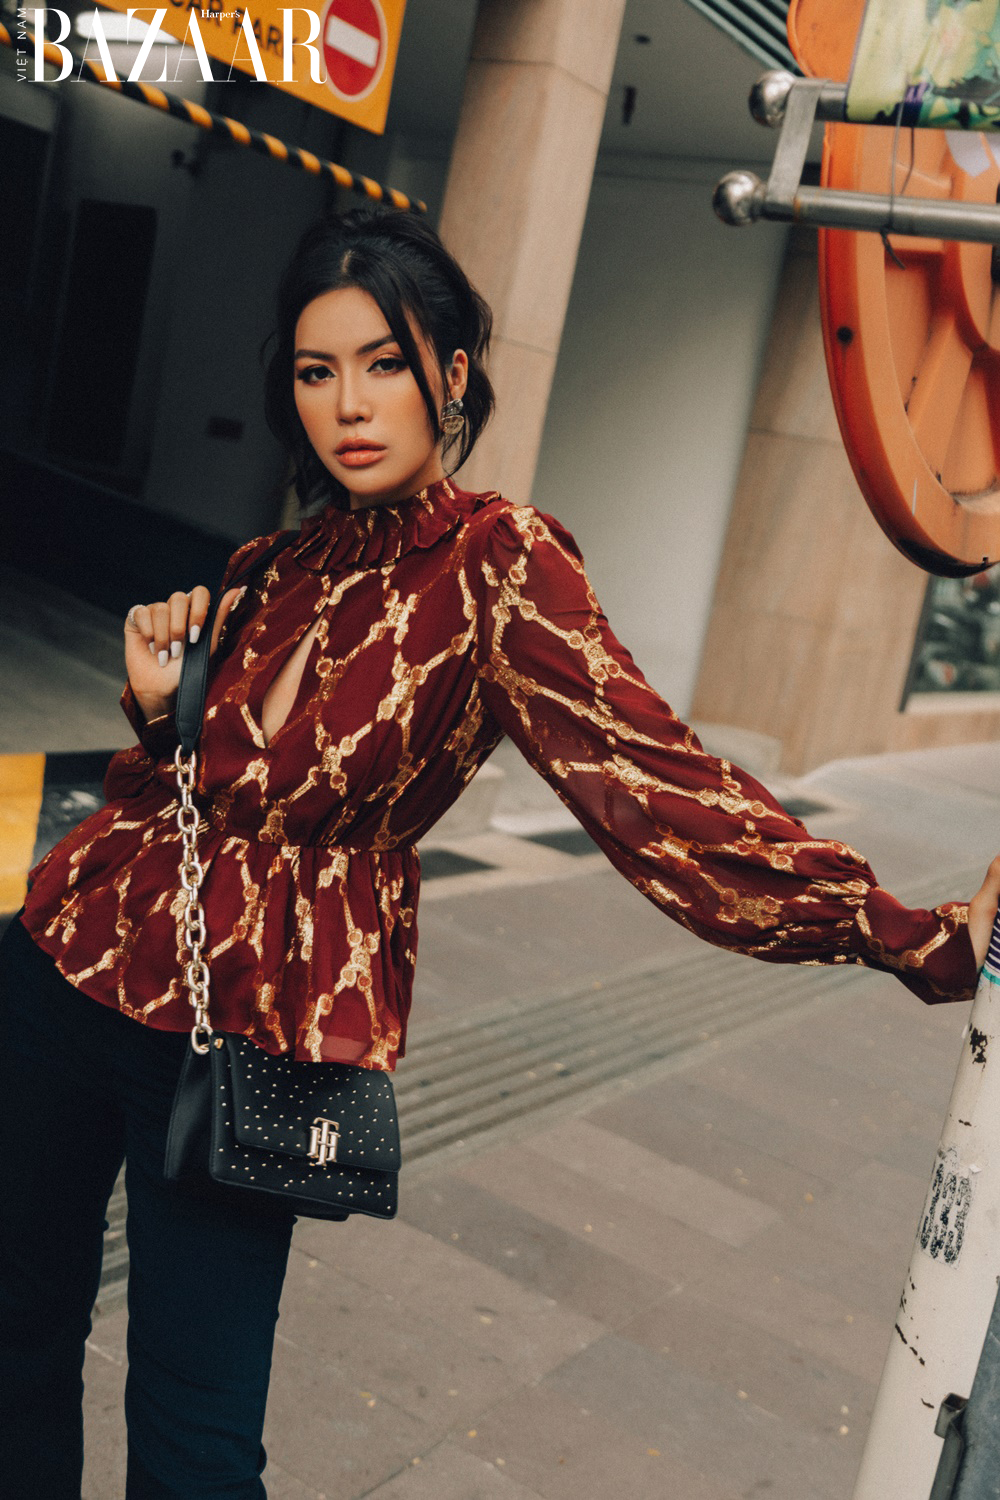 Harper's Bazaar_Siêu mẫu Minh Tú dạo phố ngày Tết_3